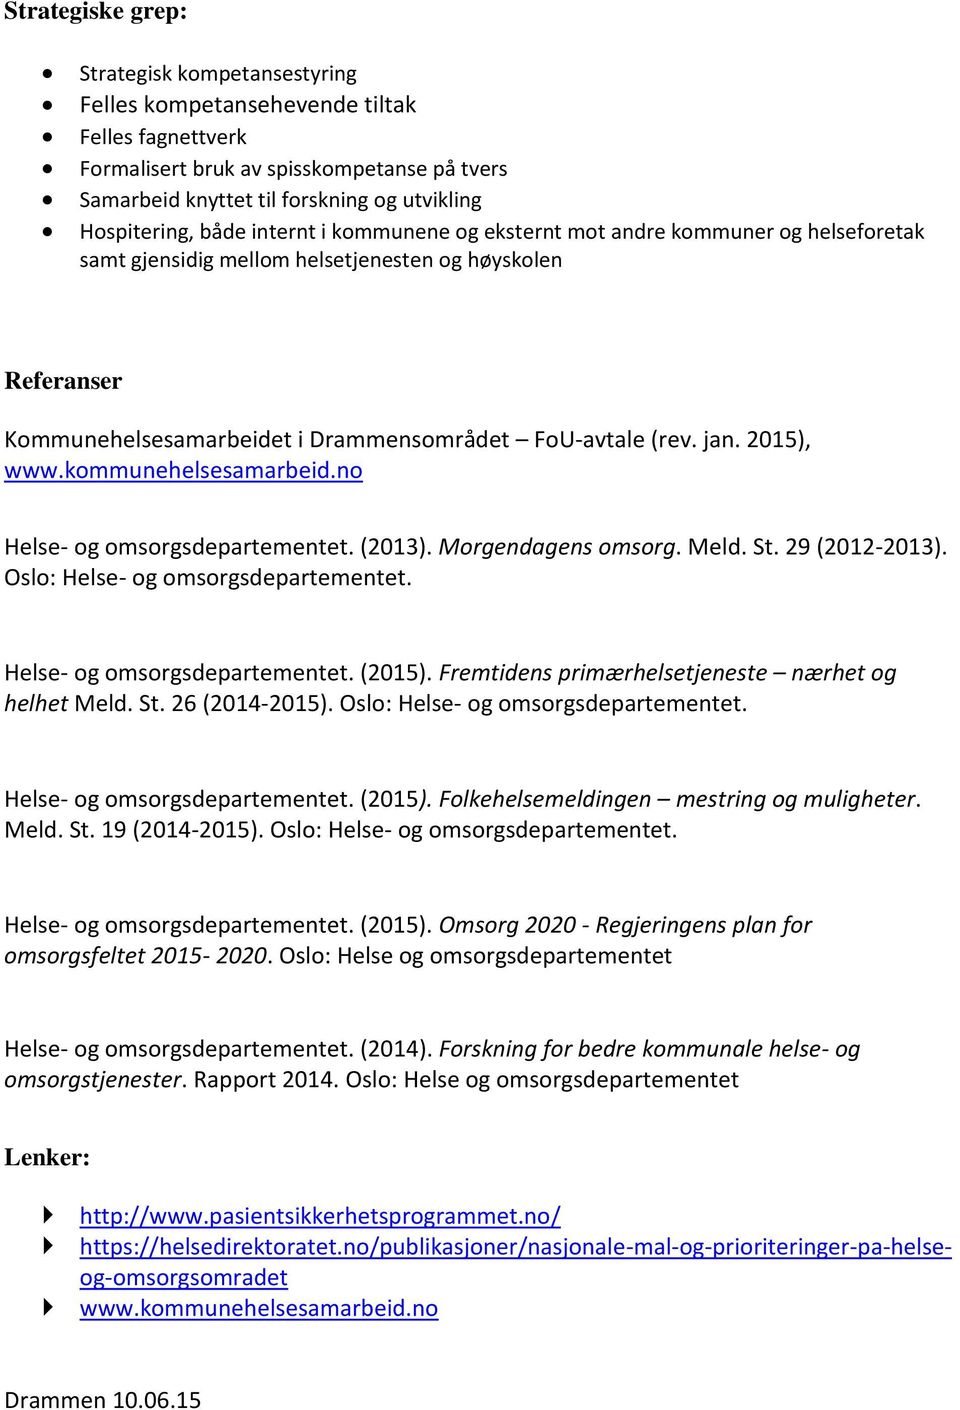 jan. 2015), www.kommunehelsesamarbeid.no Helse- og omsorgsdepartementet. (2013). Morgendagens omsorg. Meld. St. 29 (2012-2013). Oslo: Helse- og omsorgsdepartementet. Helse- og omsorgsdepartementet. (2015).